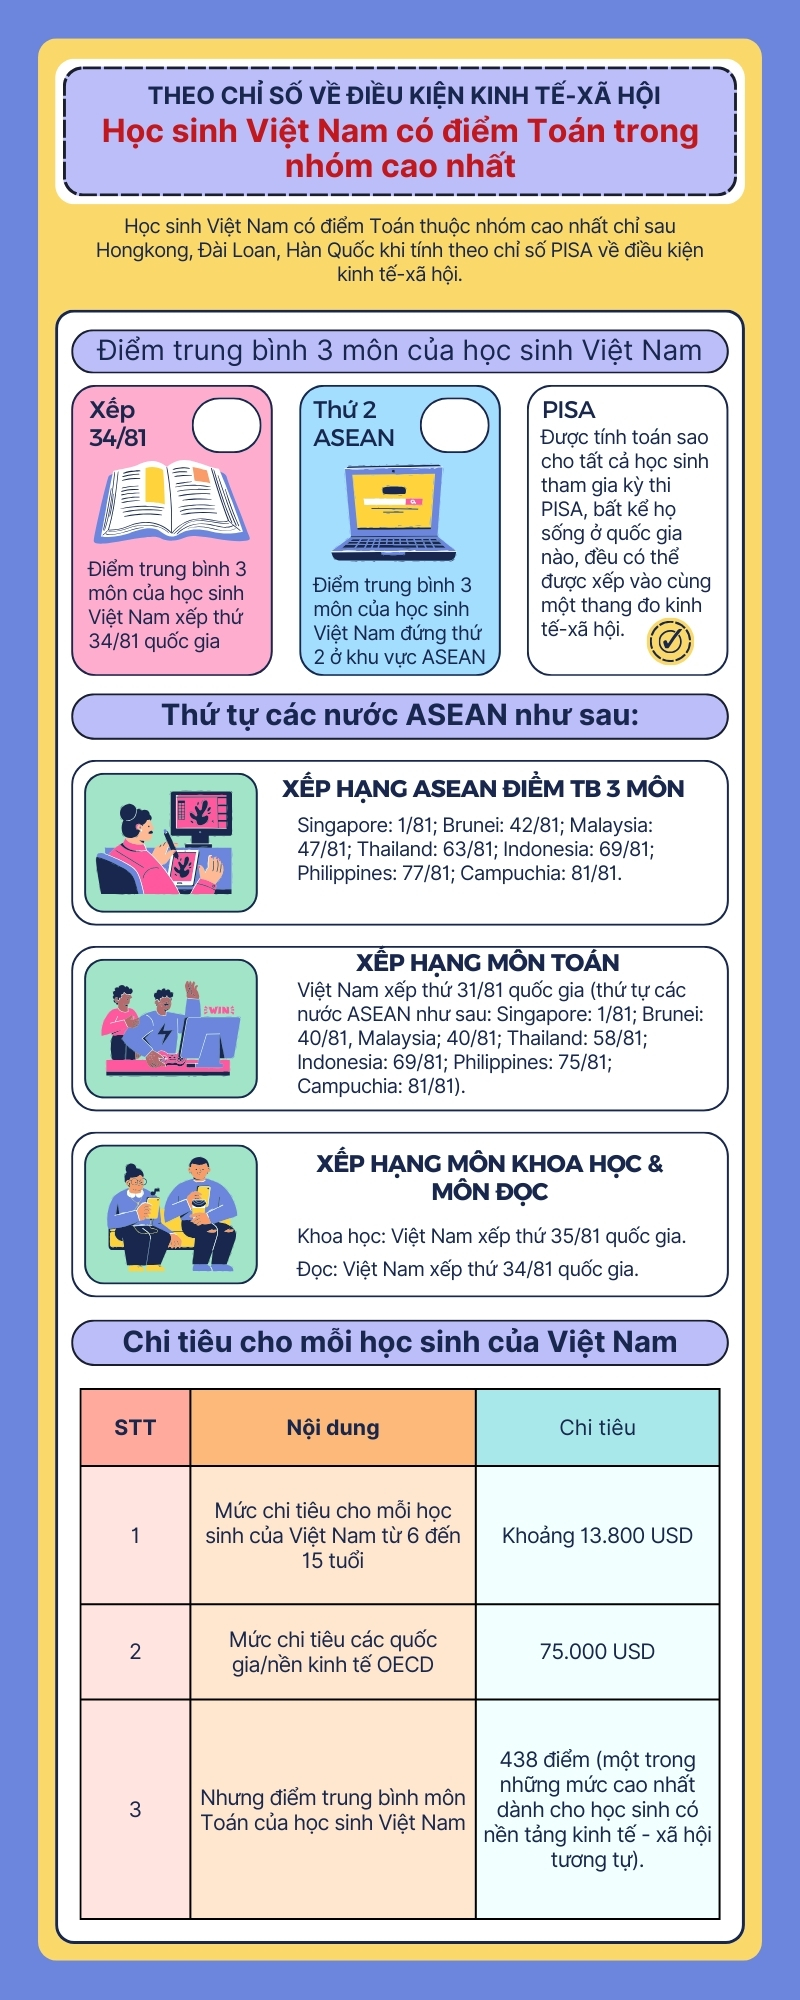 [Infographic] - Học sinh Việt Nam có điểm Toán trong nhóm cao nhất (theo PISA)- Ảnh 1.